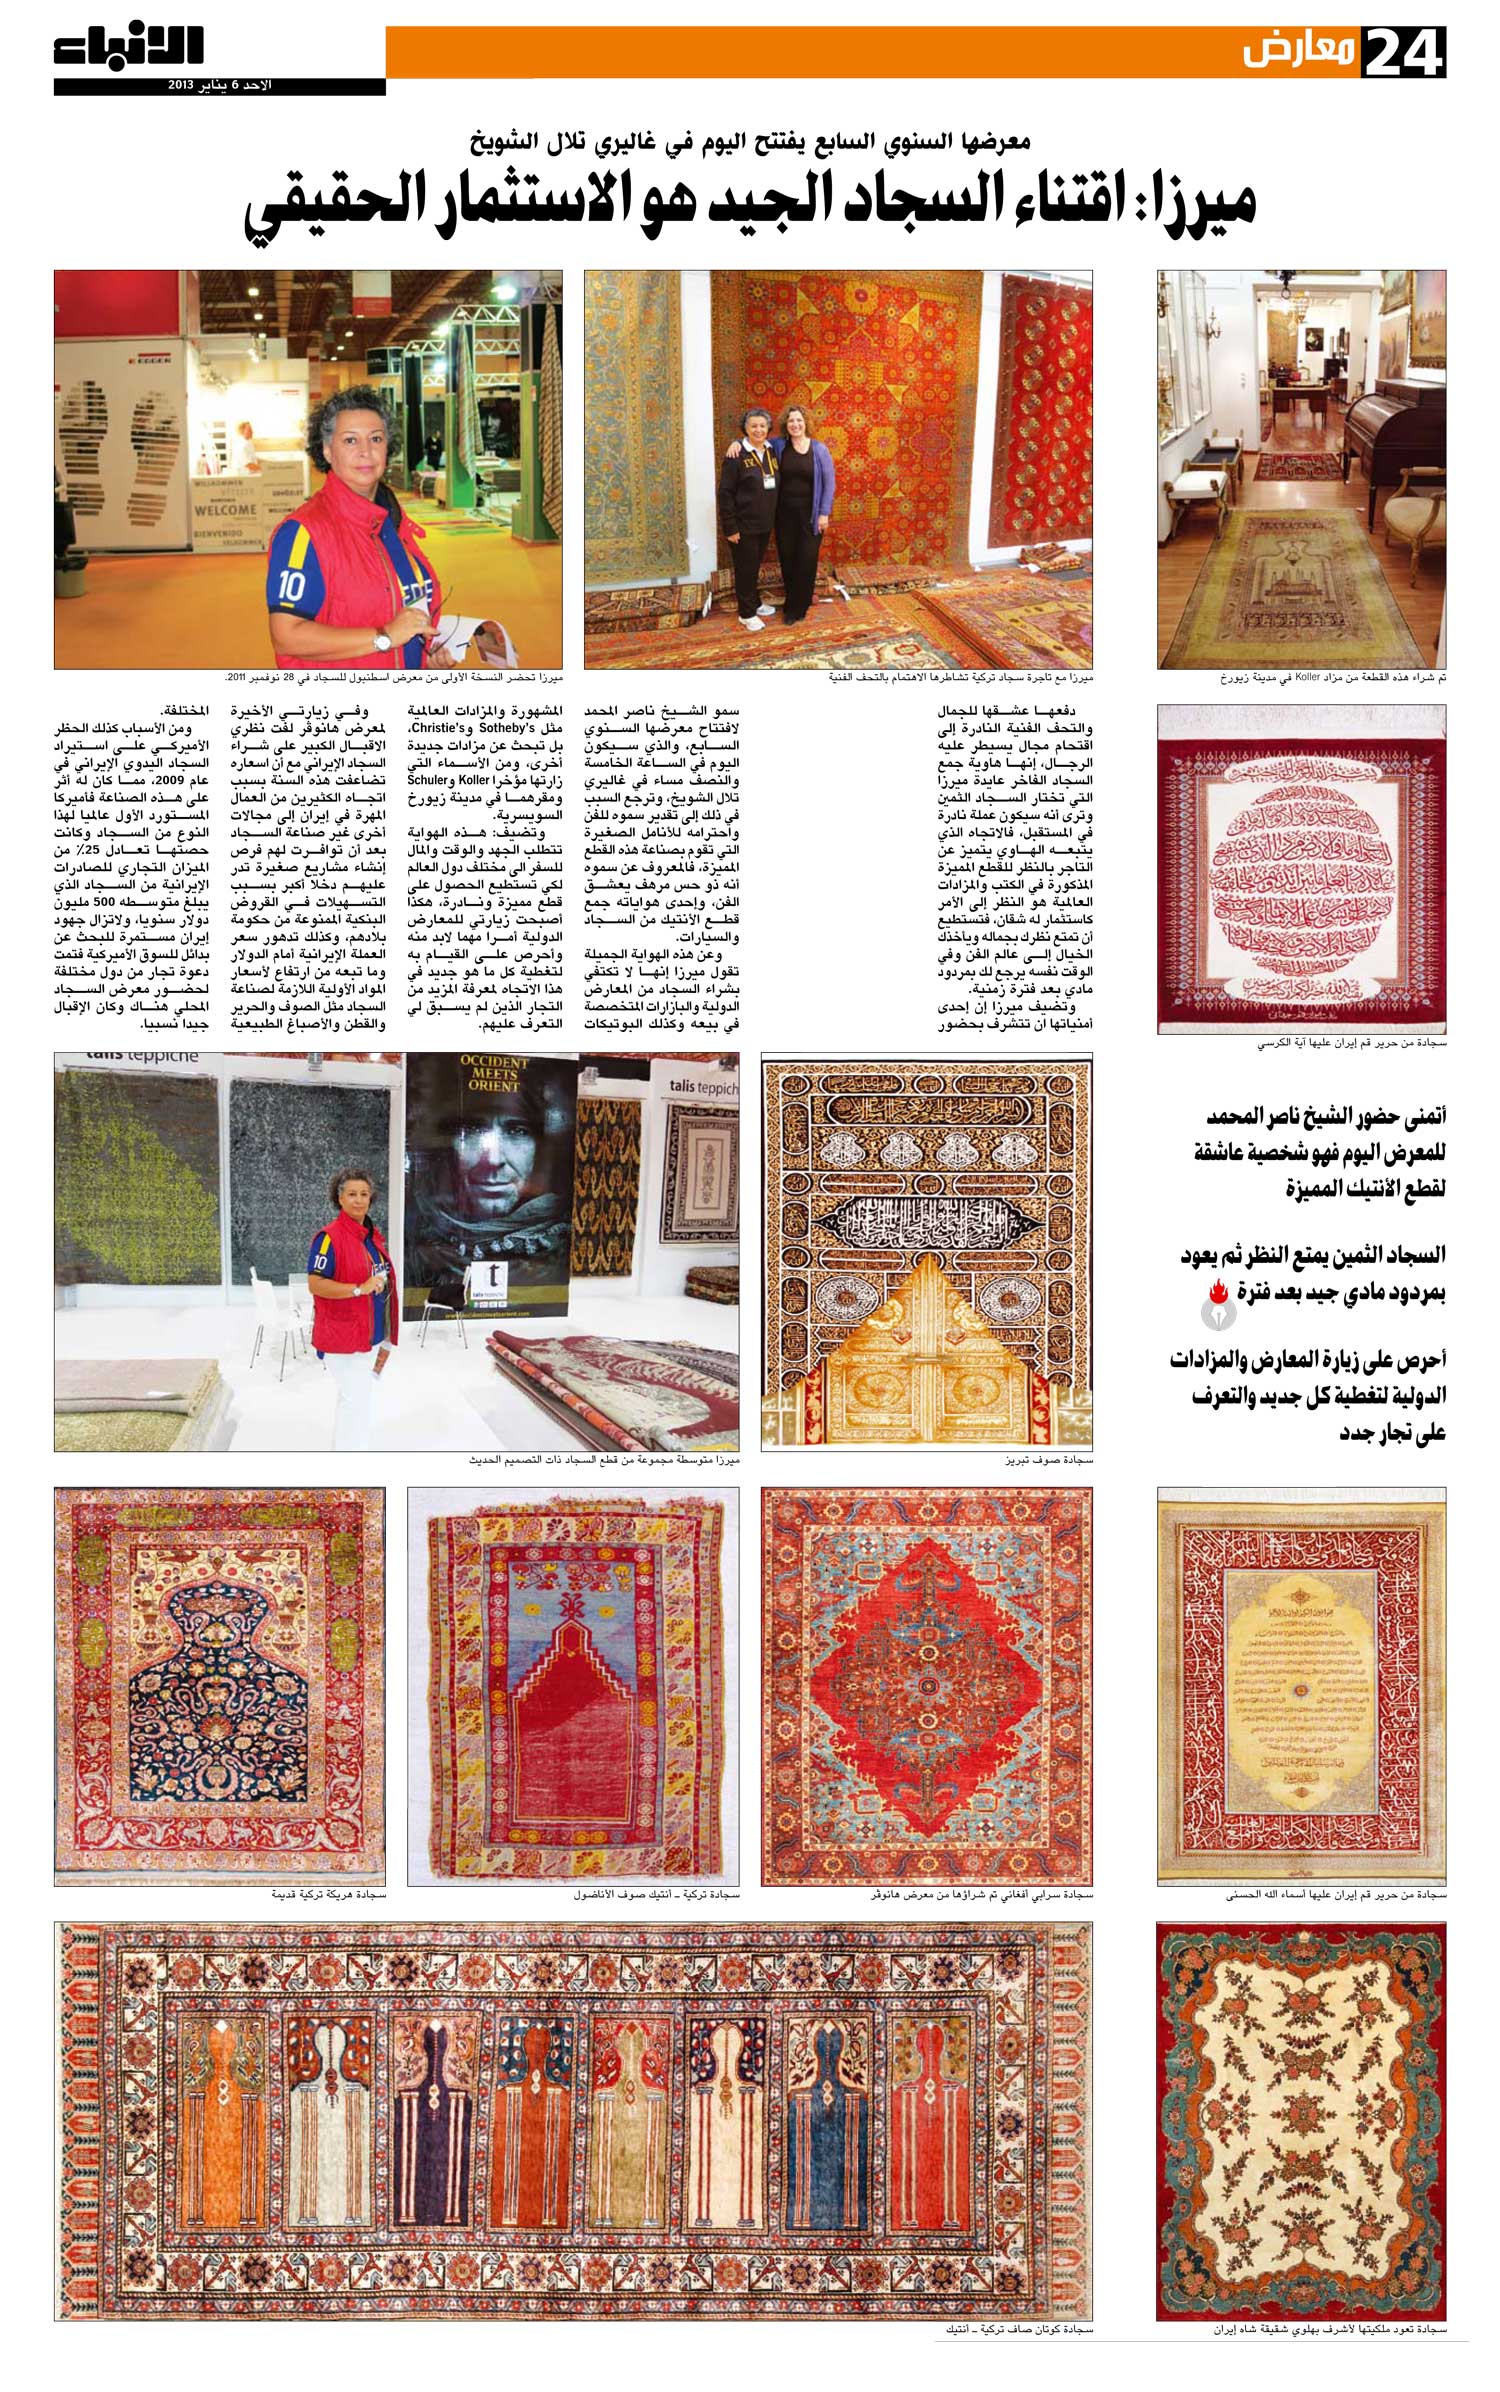 گالری فرش های نفیس ایرانی خانم Ayda Merza در کشور عربی کویت 